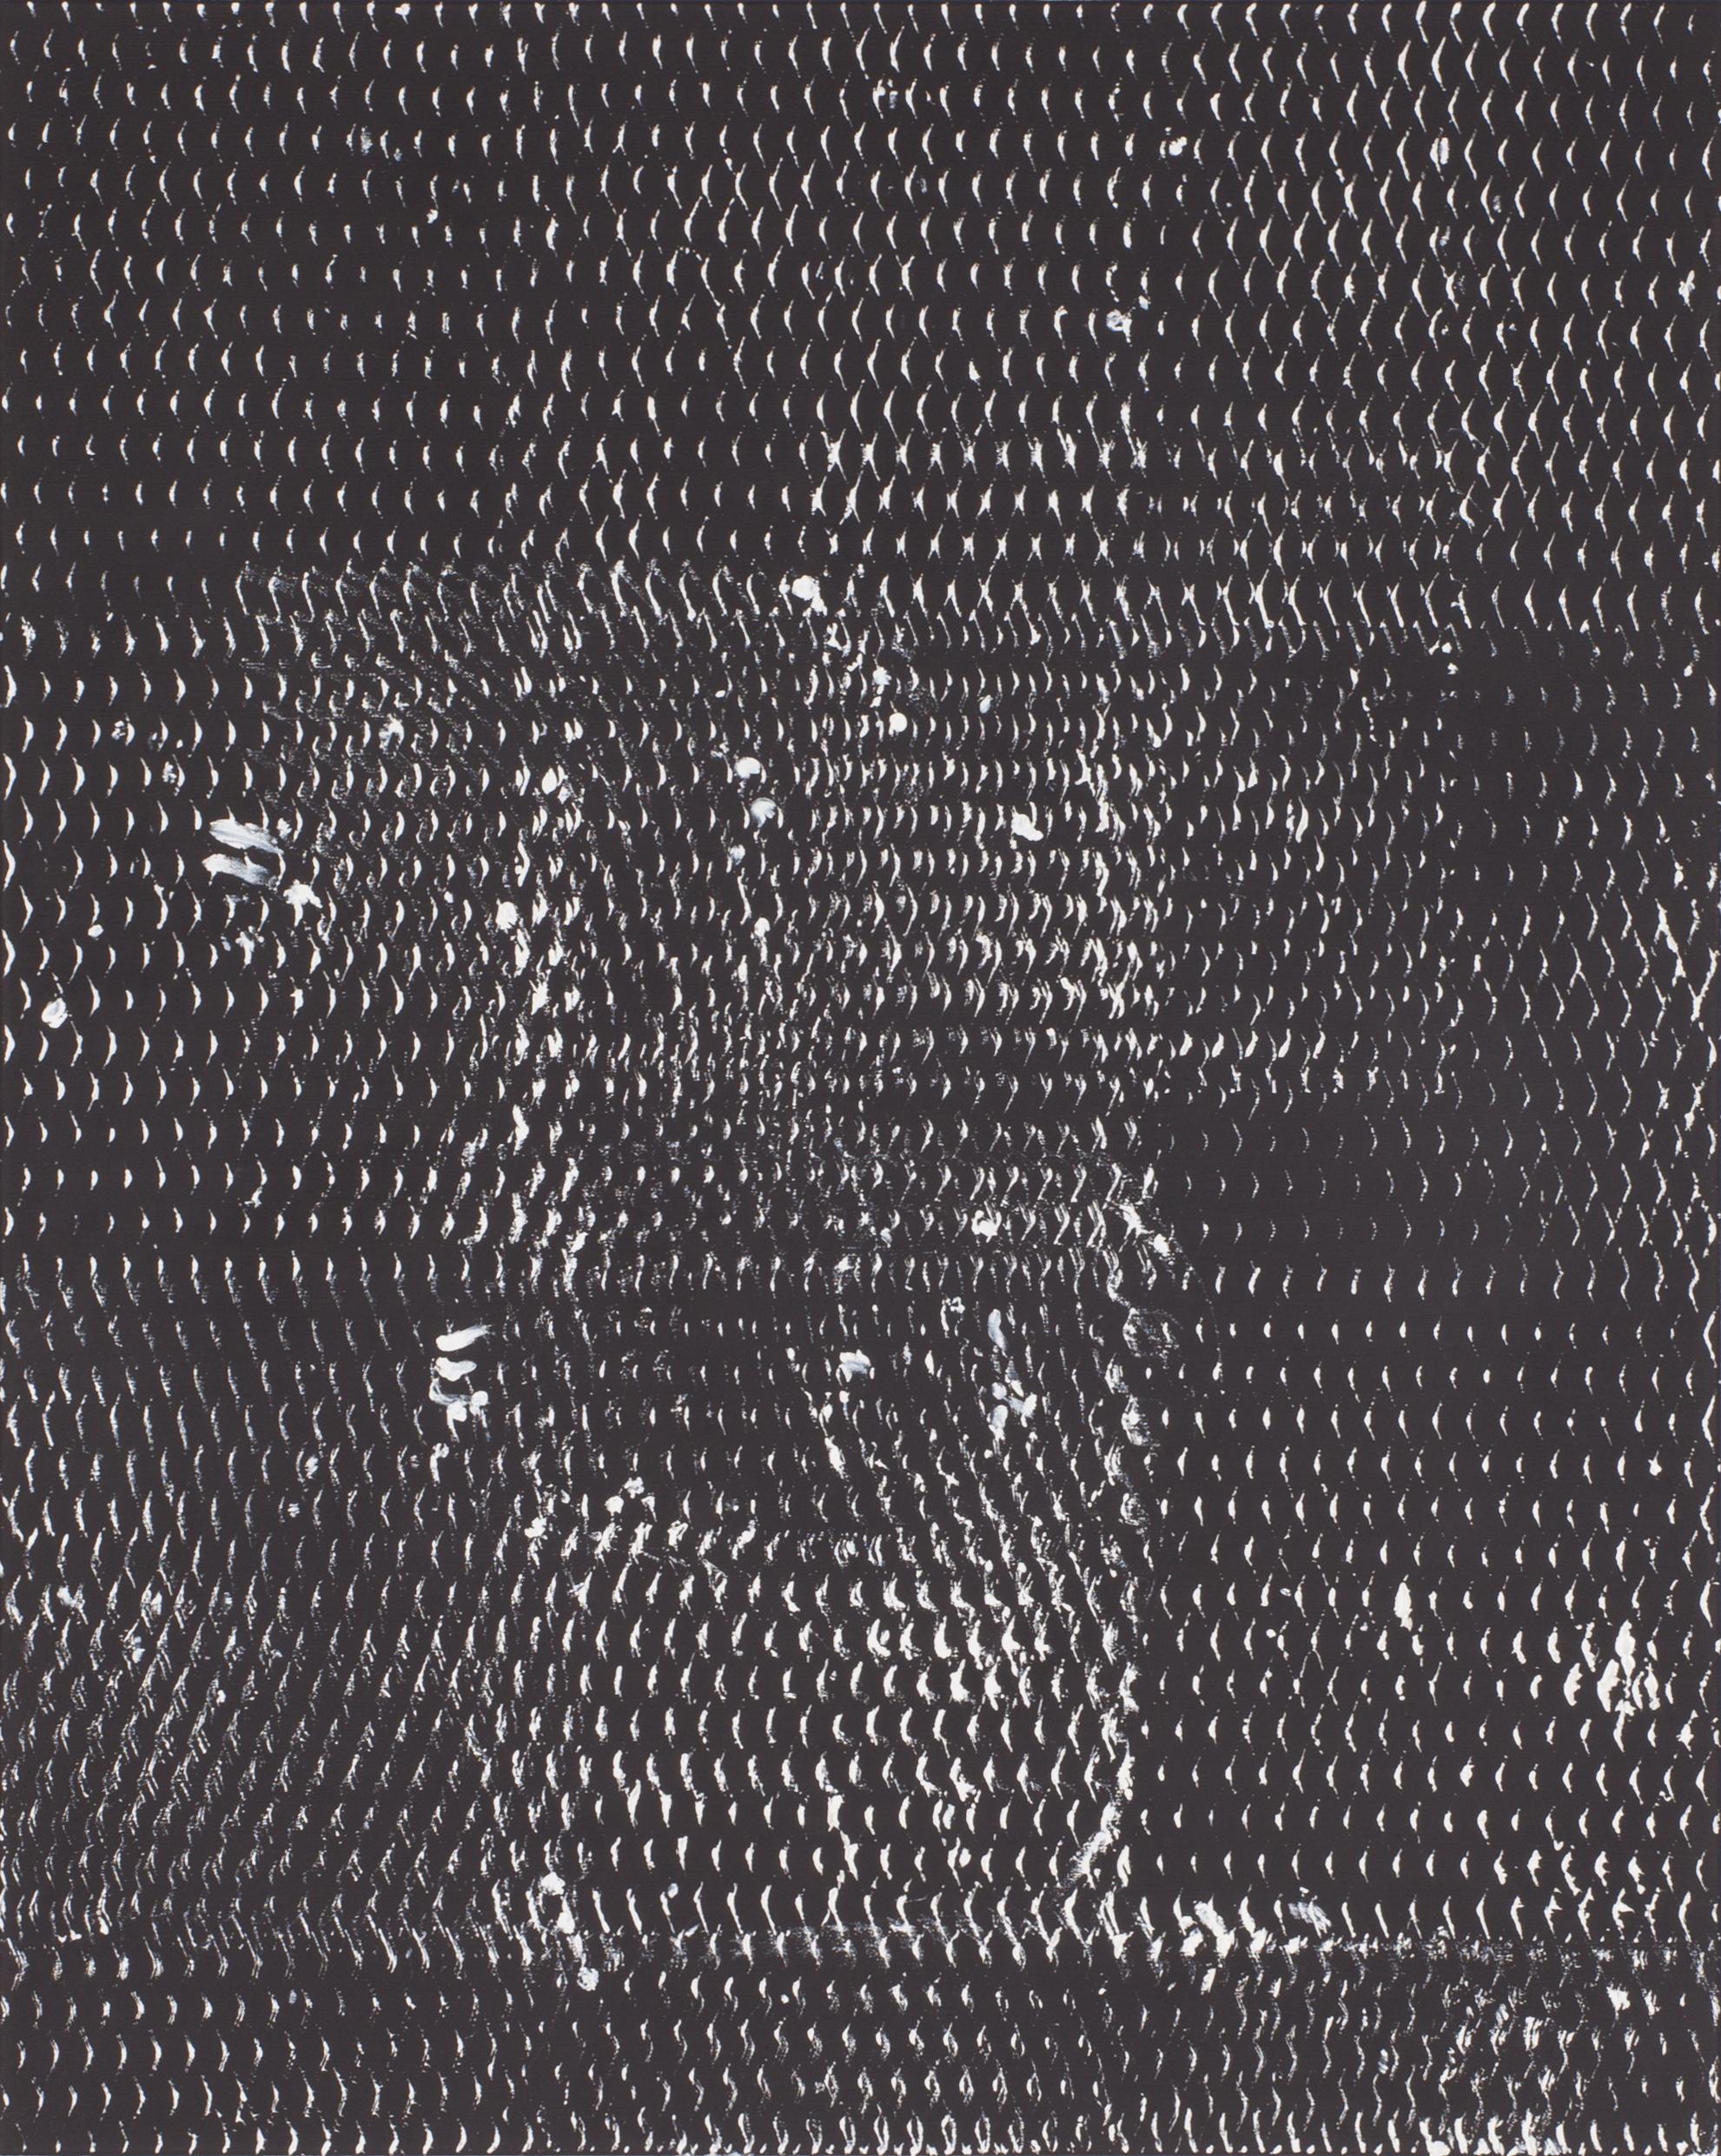 Schwarz-Weiß I, II und III, Expanded Metal Painting. Triptychon, 2017 von Clemens Wolf
Aus der Serie Streckmetallbilder
Öl auf Leinwand
Gesamtgröße: 150 H x 360 B CM 
Einzelgröße: 150 H x 120 B CM 
Ausgepackt: 15 kg Ungefähr.
Verpackt: 90 kg